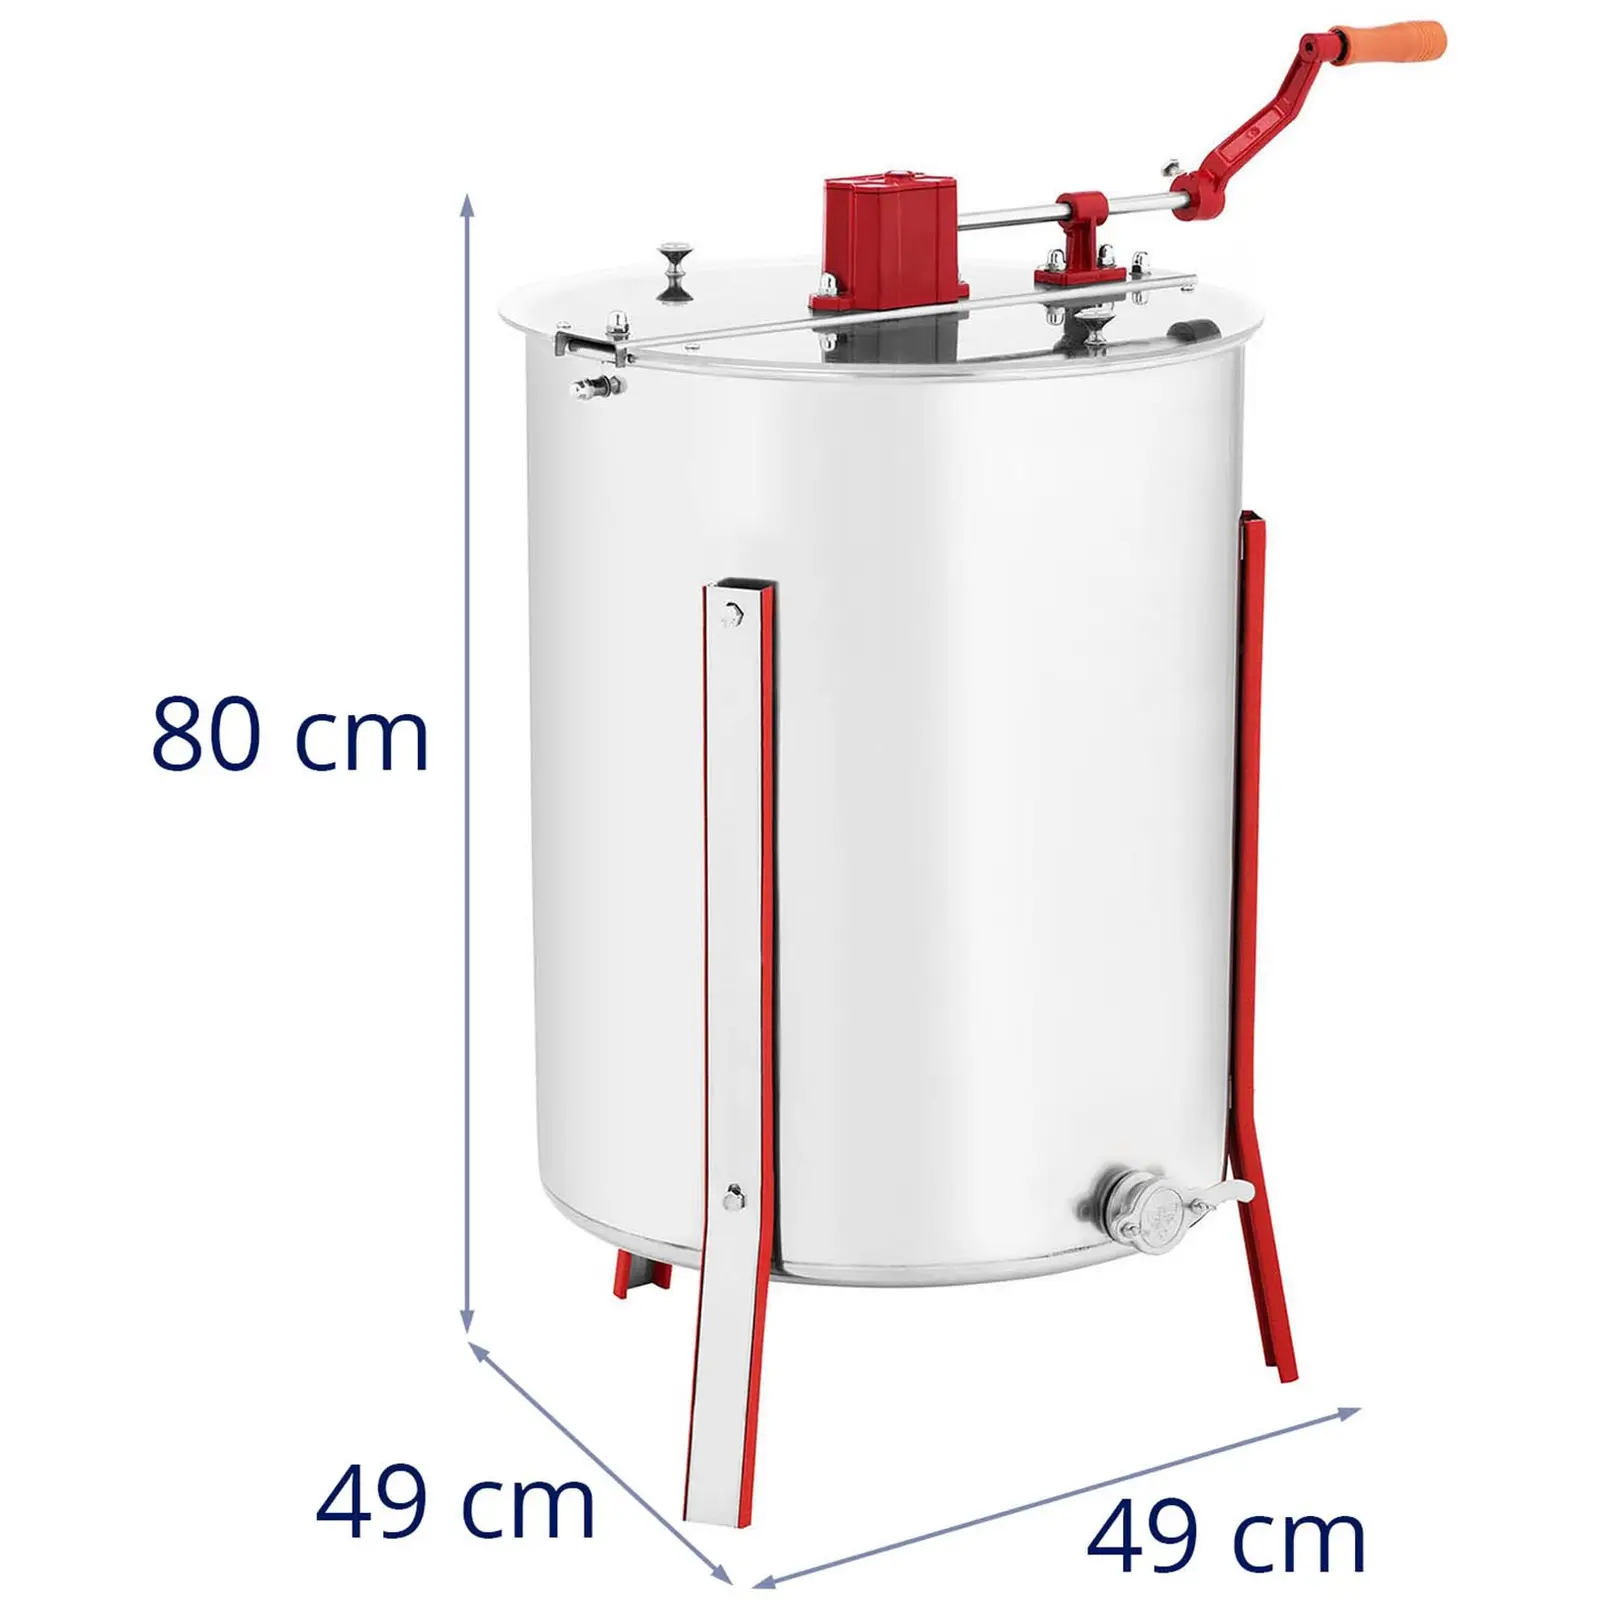 Extractor de miel - tangencial - manual - 4 panales - cubierta en acrílico